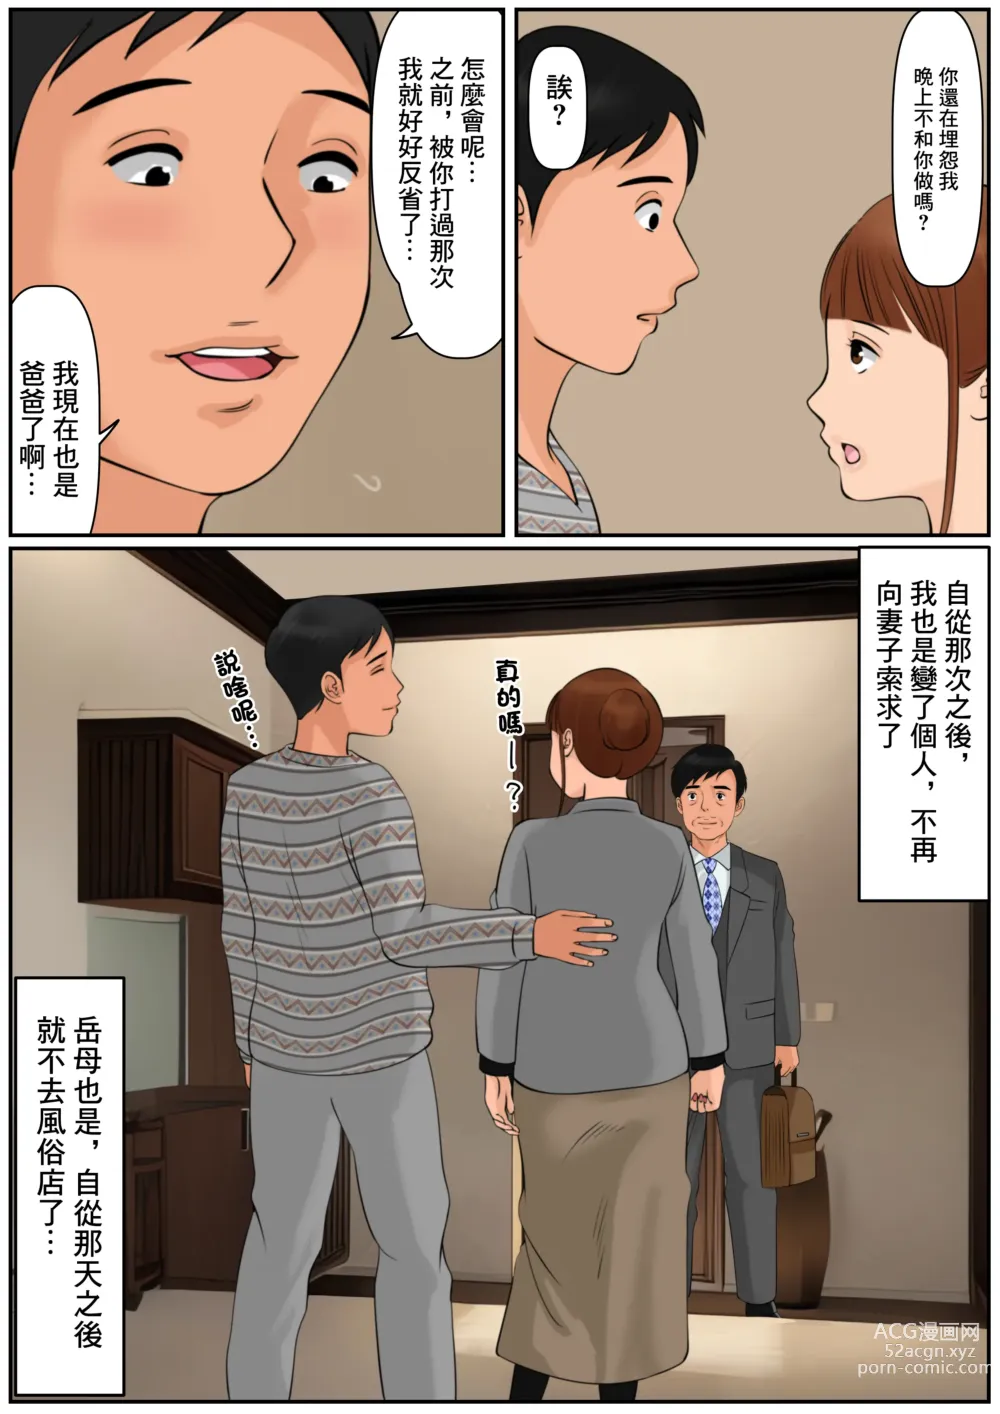 Page 36 of doujinshi 難道你是嫌棄我這個媽媽嗎?